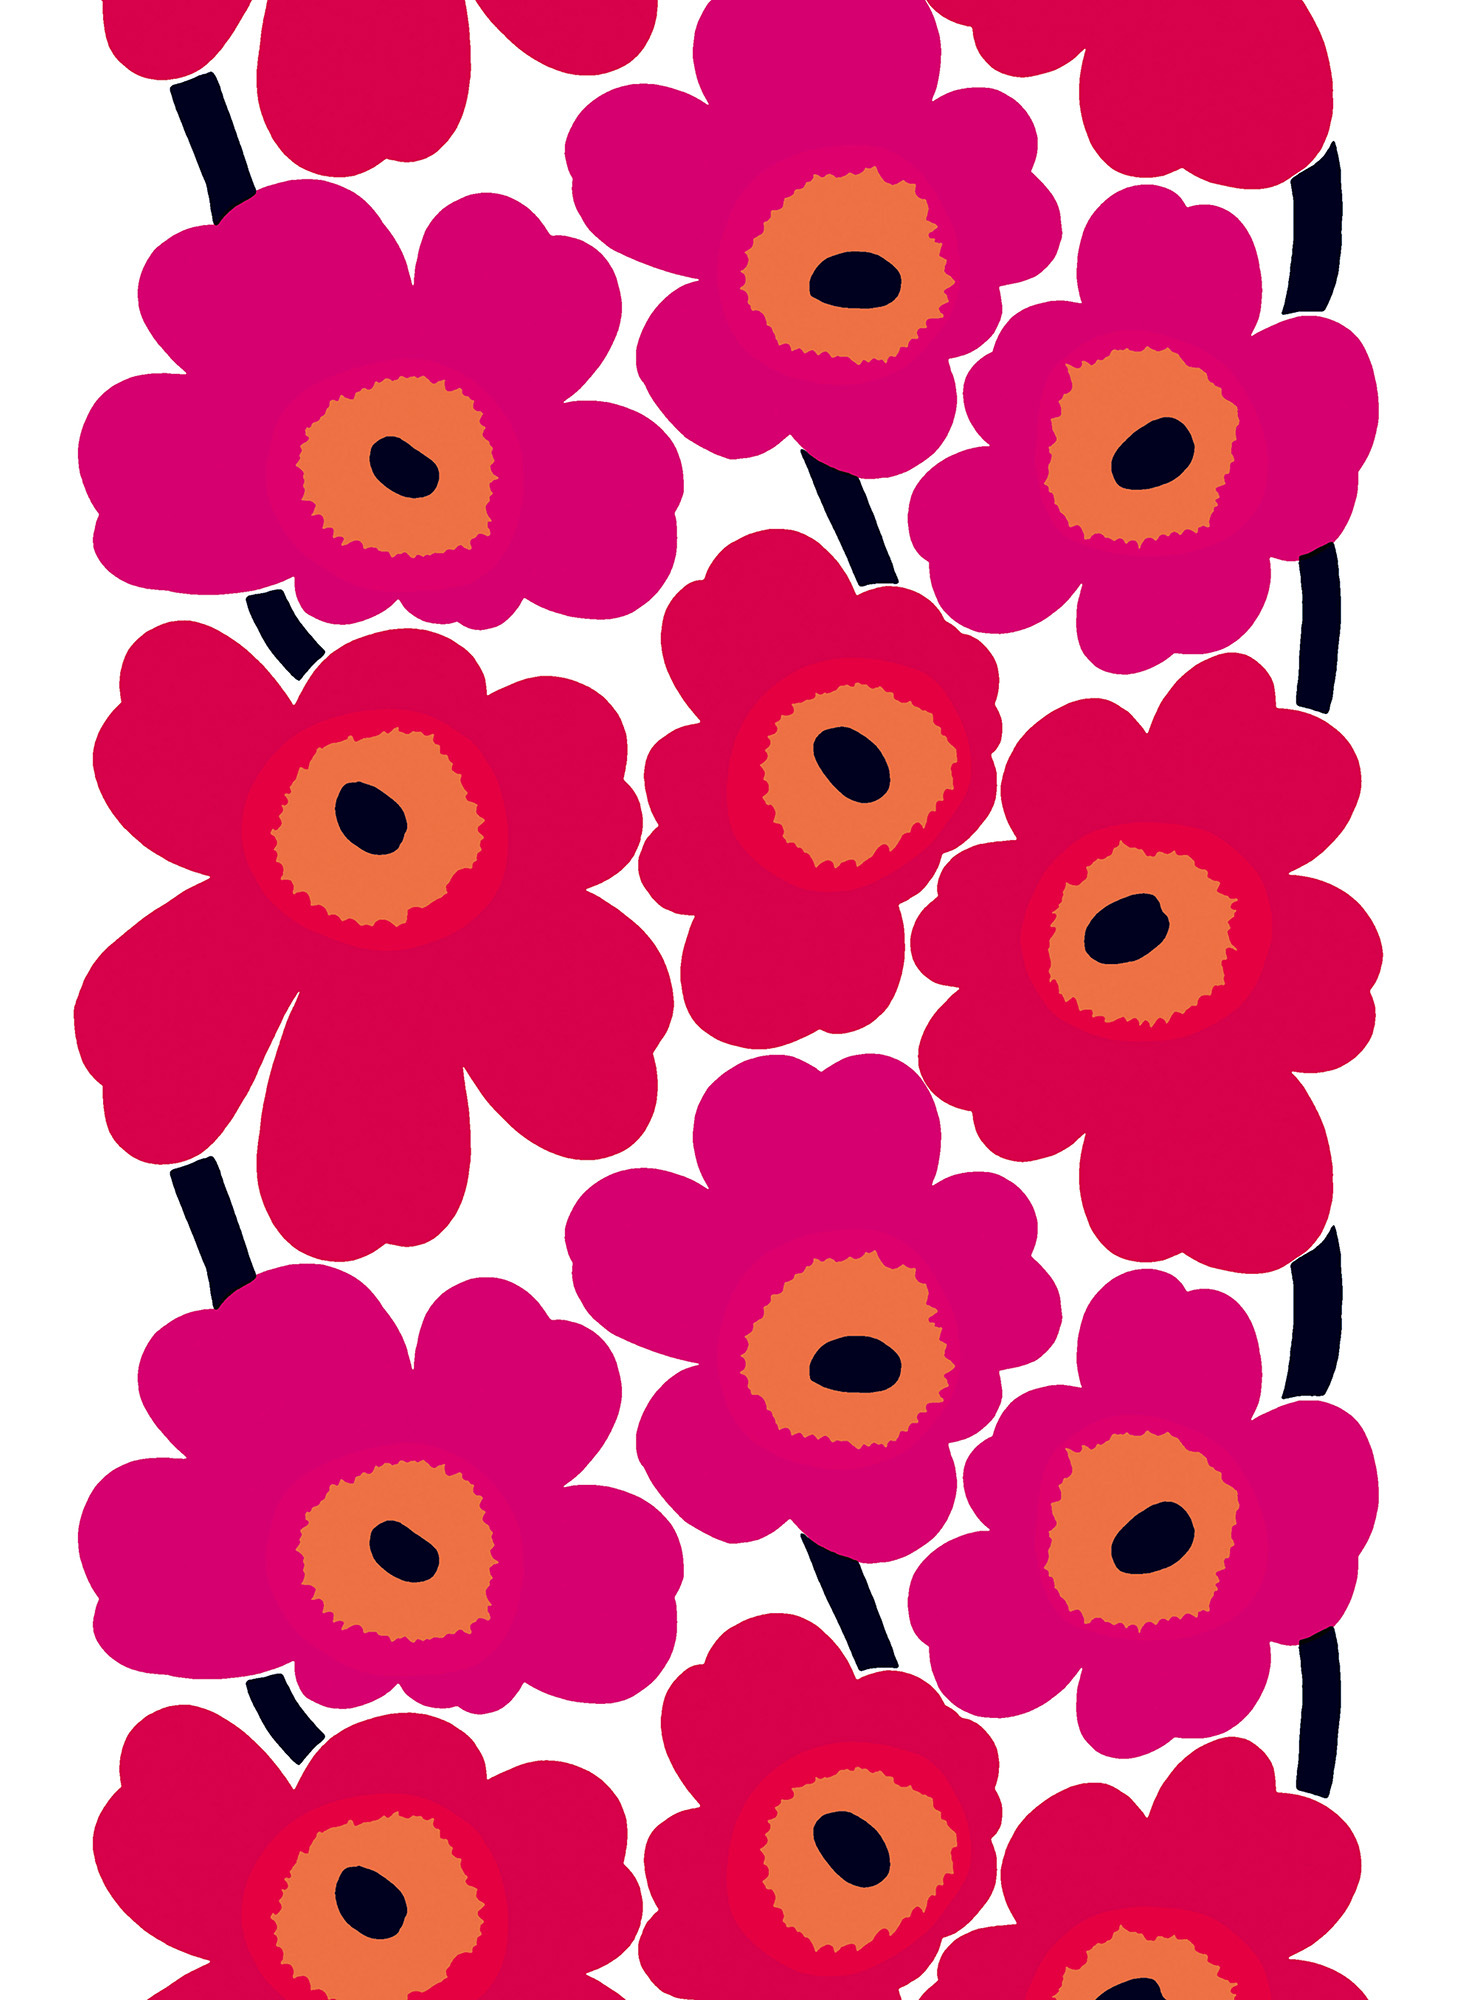 ファブリック ≪ウニッコ≫（ケシの花）、図案デザイン：マイヤ・イソラ、 1964年 Unikko pattern designed for Marimekko by Maija Isola in 1964